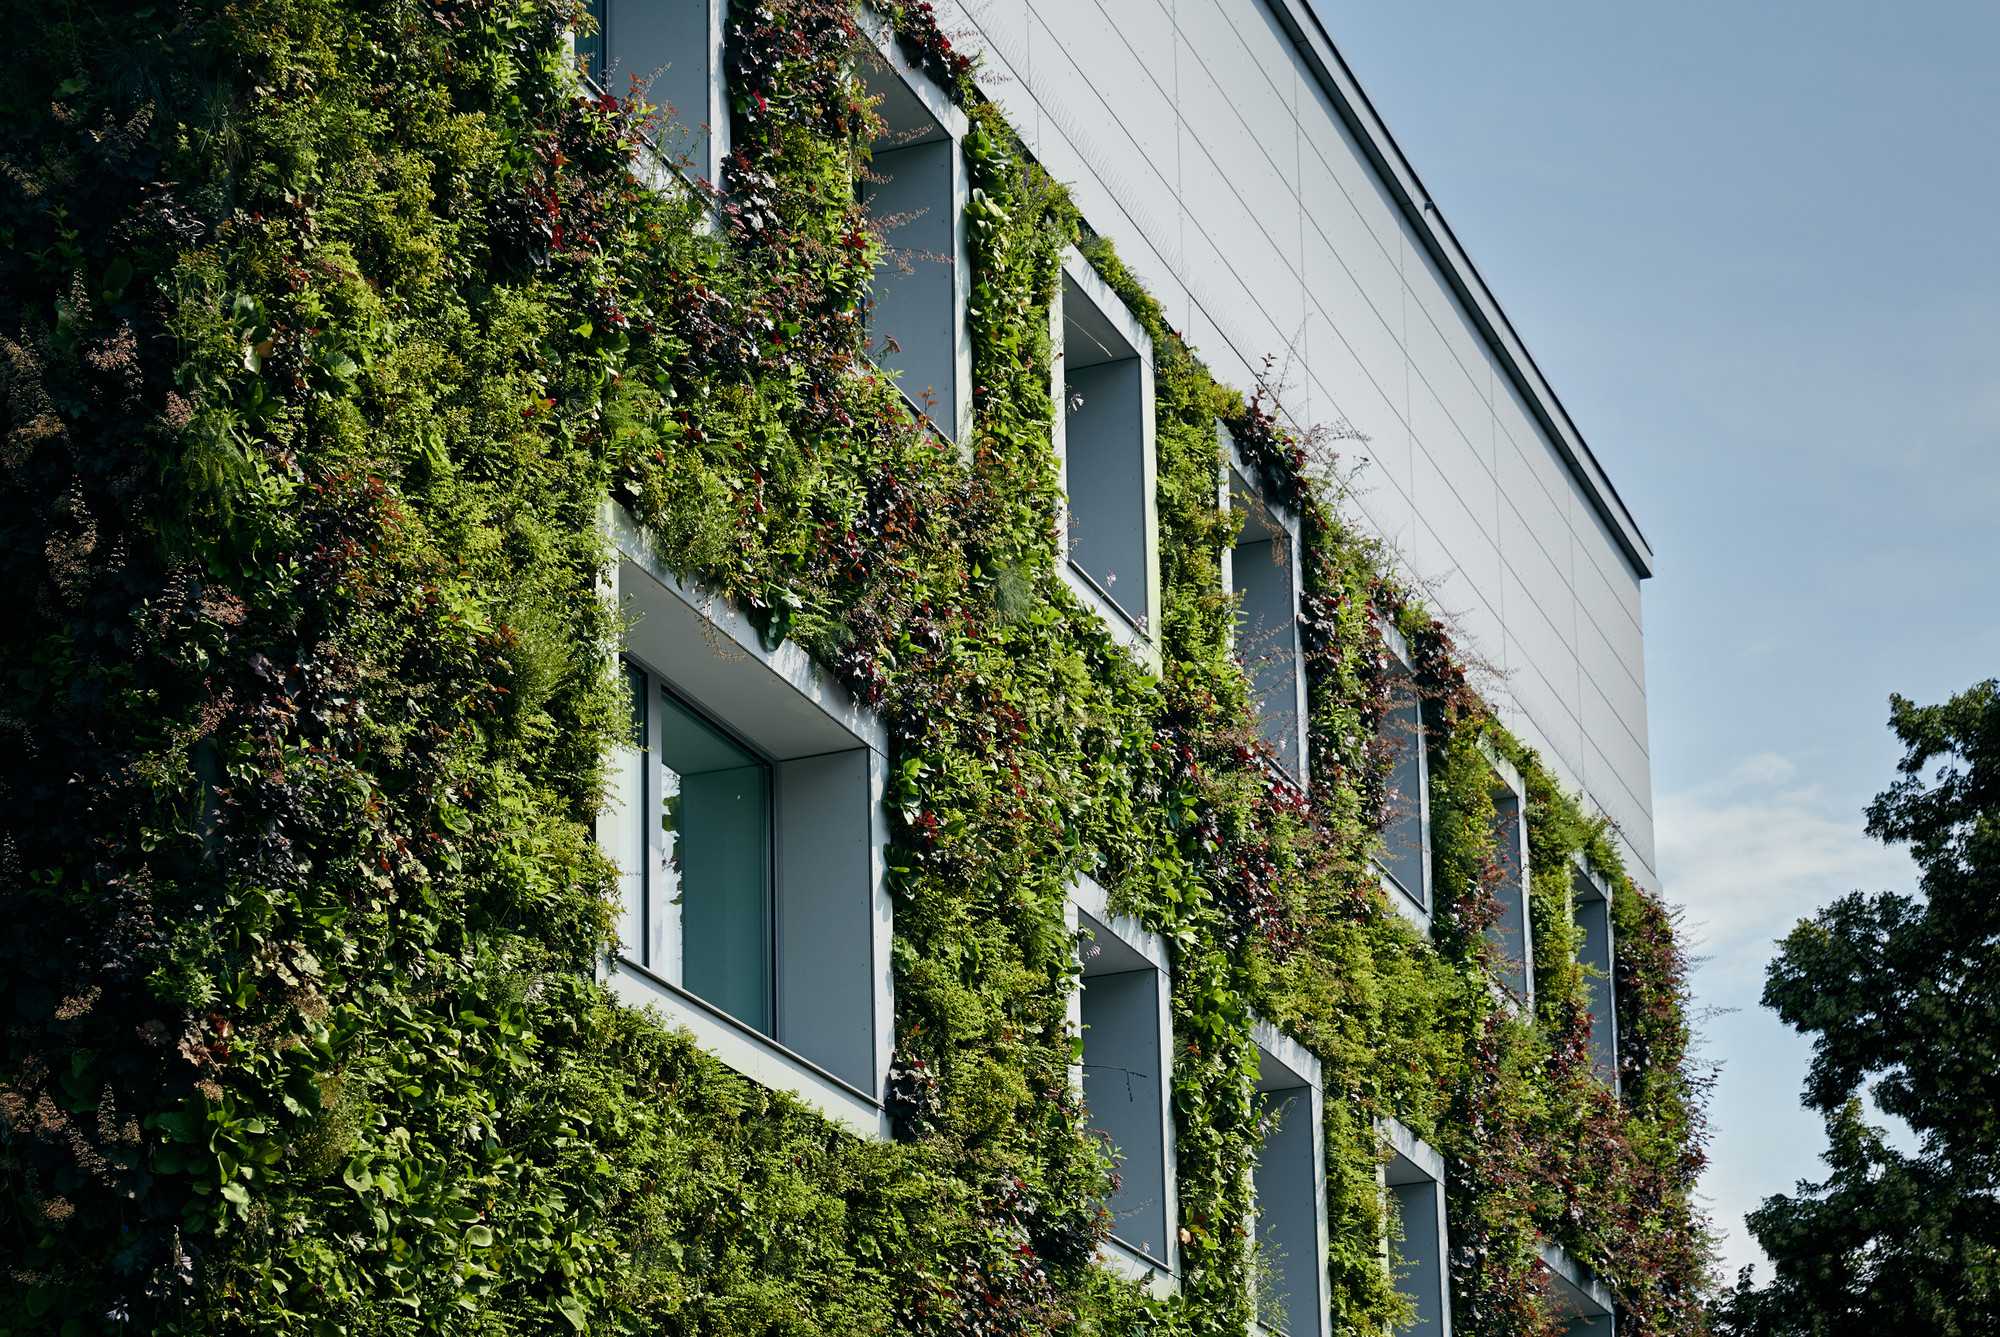 Вертикальное озеленение в квартире, на даче и ландшафтном дизайне: что это такое, конструкции, растения, как сделать своими руками